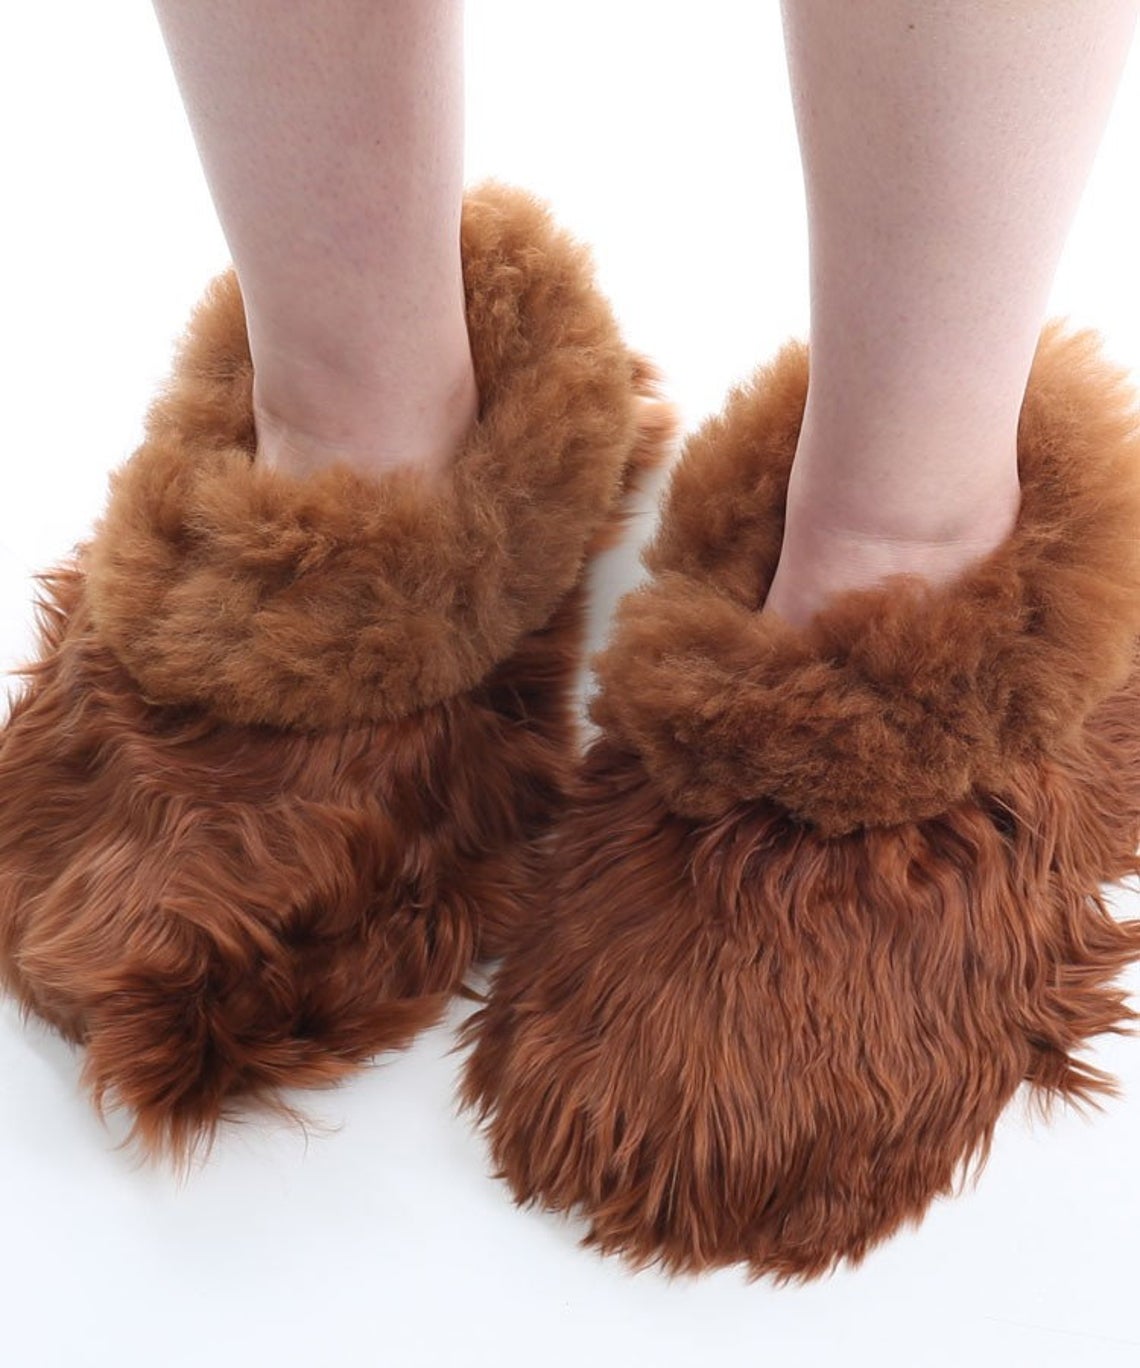 Brown Alpaca fur slippers warm & soft